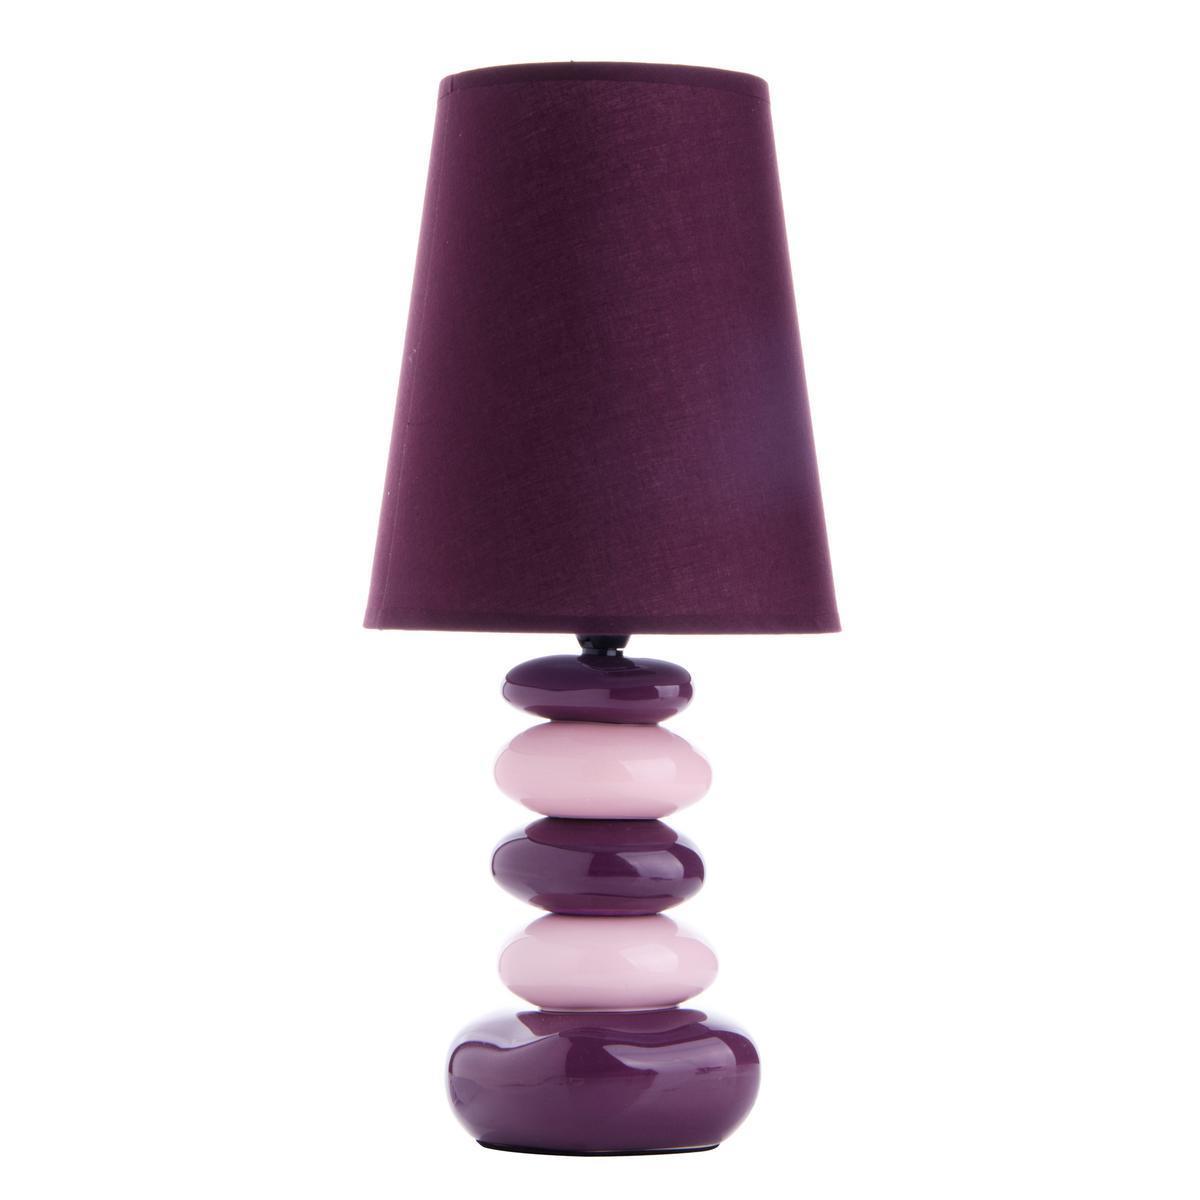 Lampe à poser stones charme - Céramique - Hauteur 41 cm - Violet prune